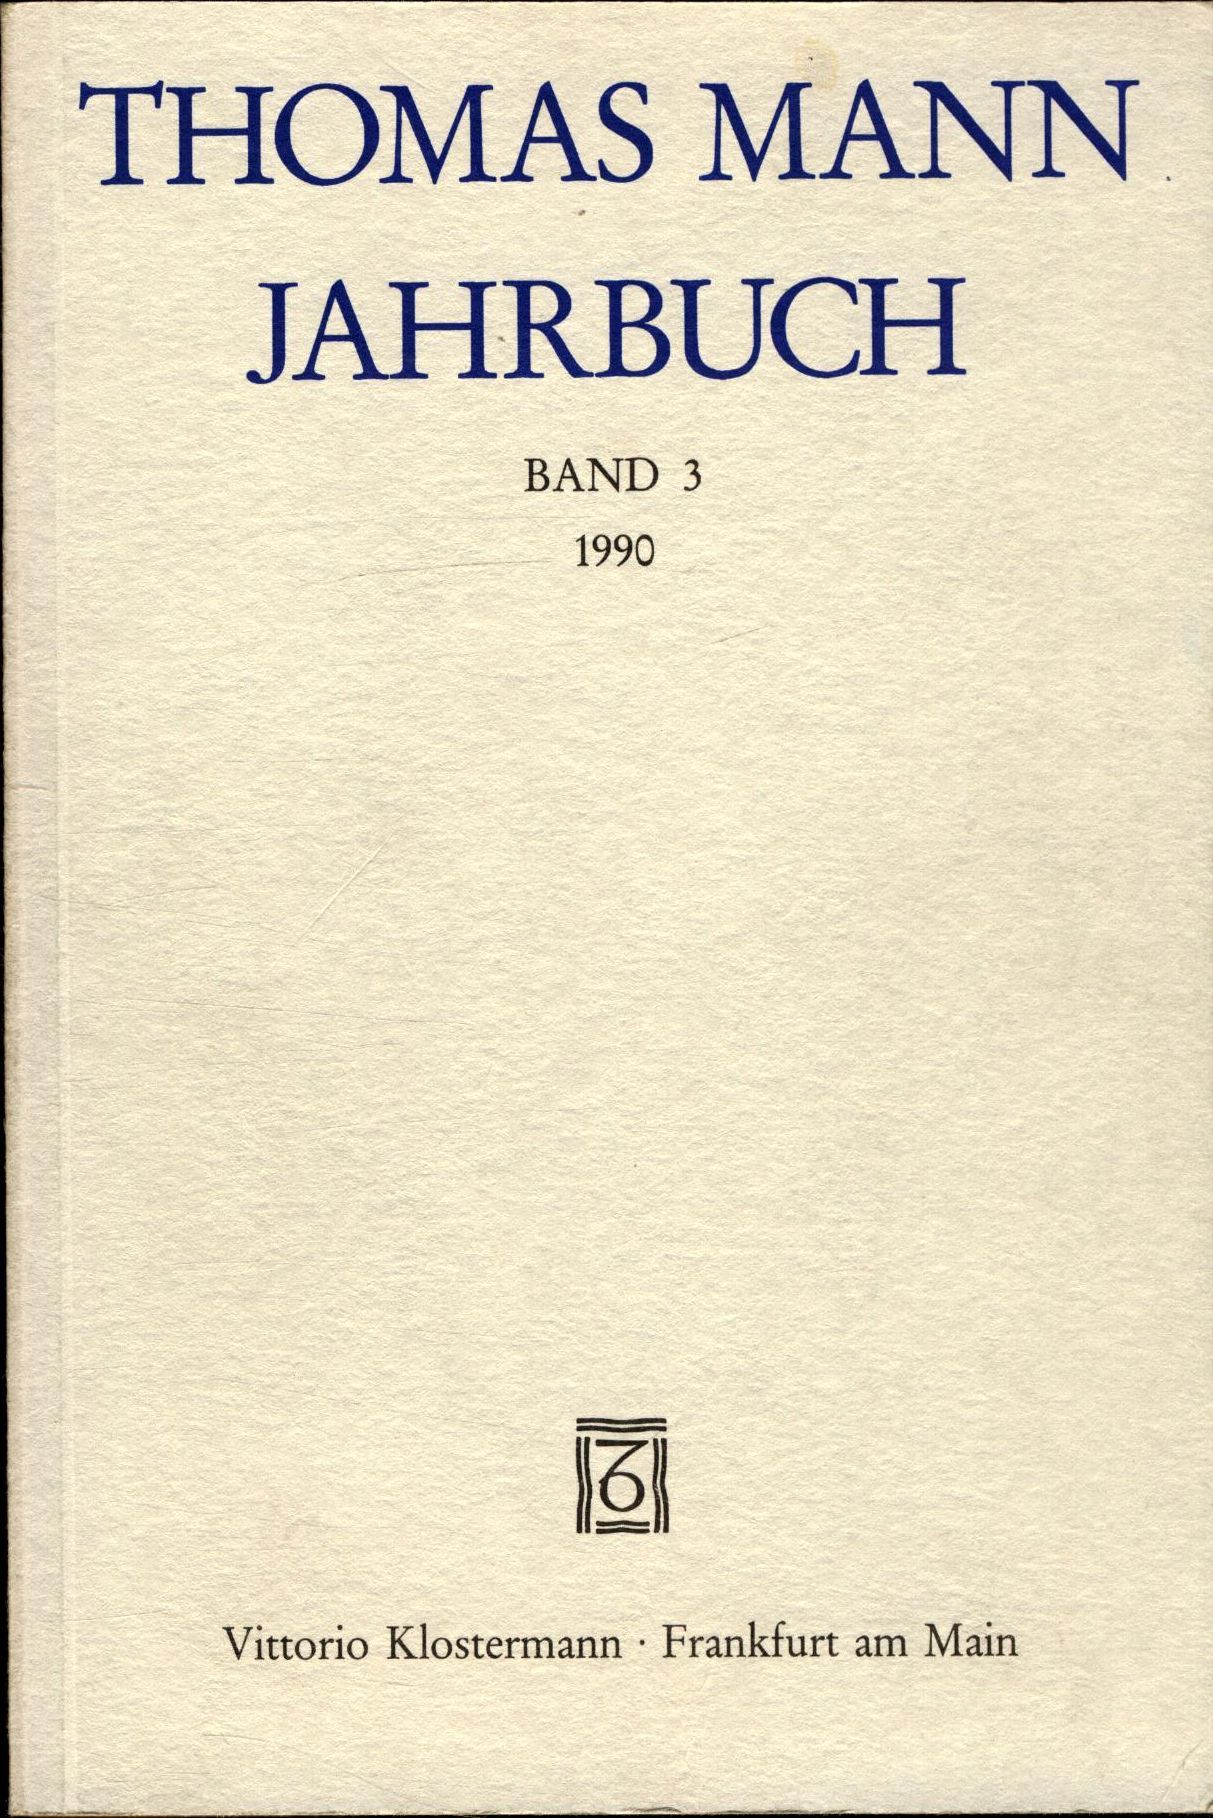 Thomas Mann Jahrbuch Band 3 - Heftrich, Eckhard, Thomas Sprecher  und Ruprecht Wimmer